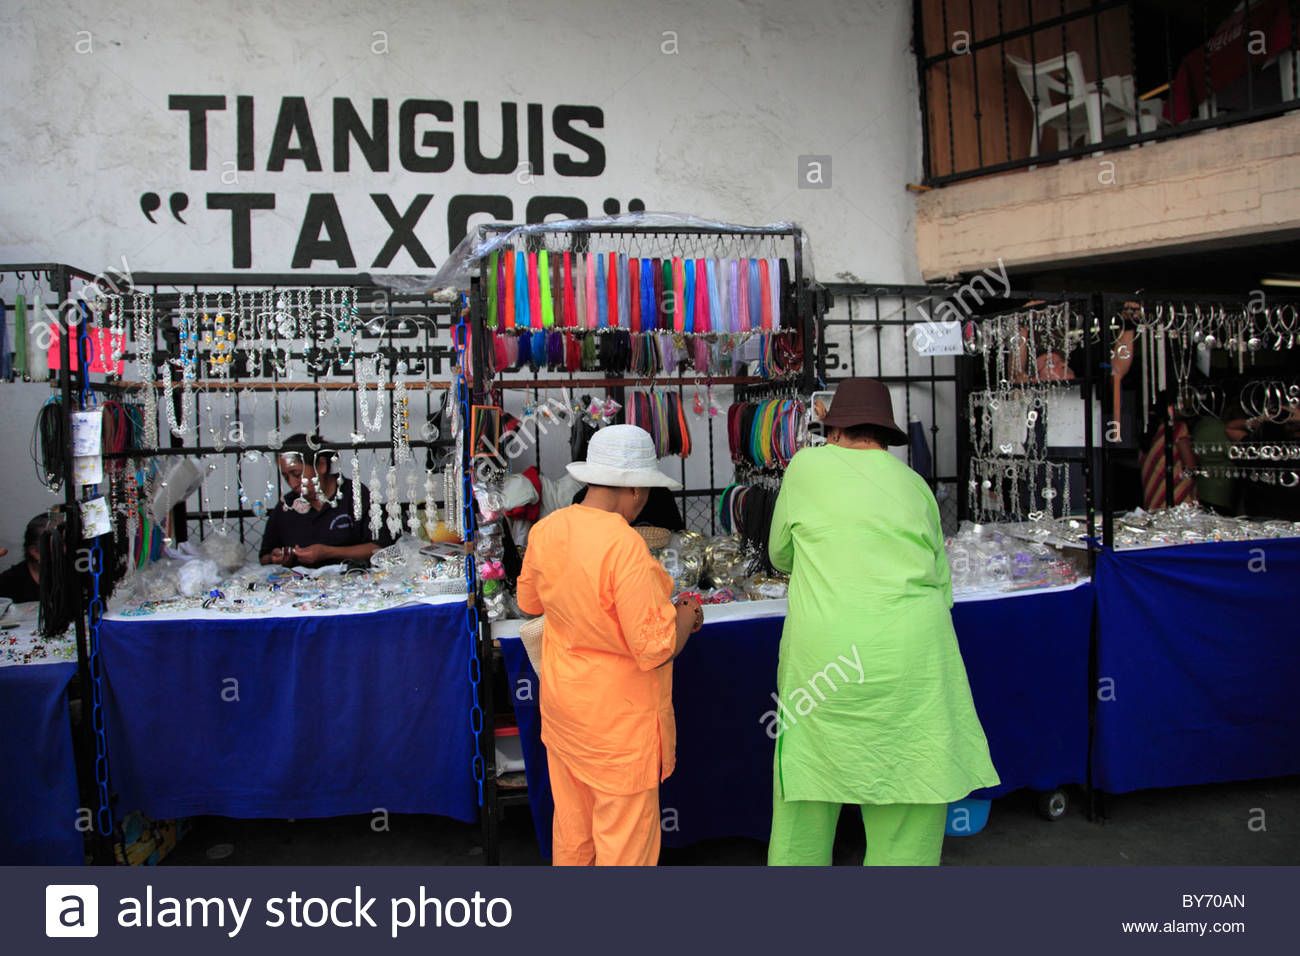 Hay probabilidades de instalar el tianguis de plata el 13 de junio en Taxco: alcalde